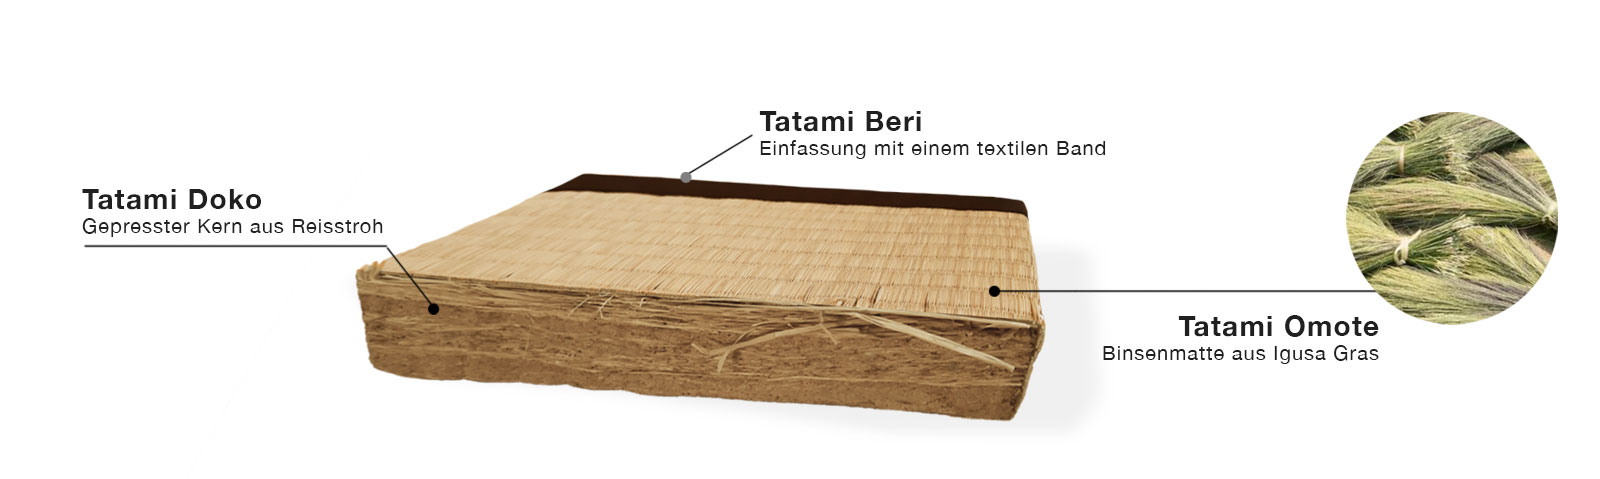 Tatami-Reisstrohmatte Querschnitt